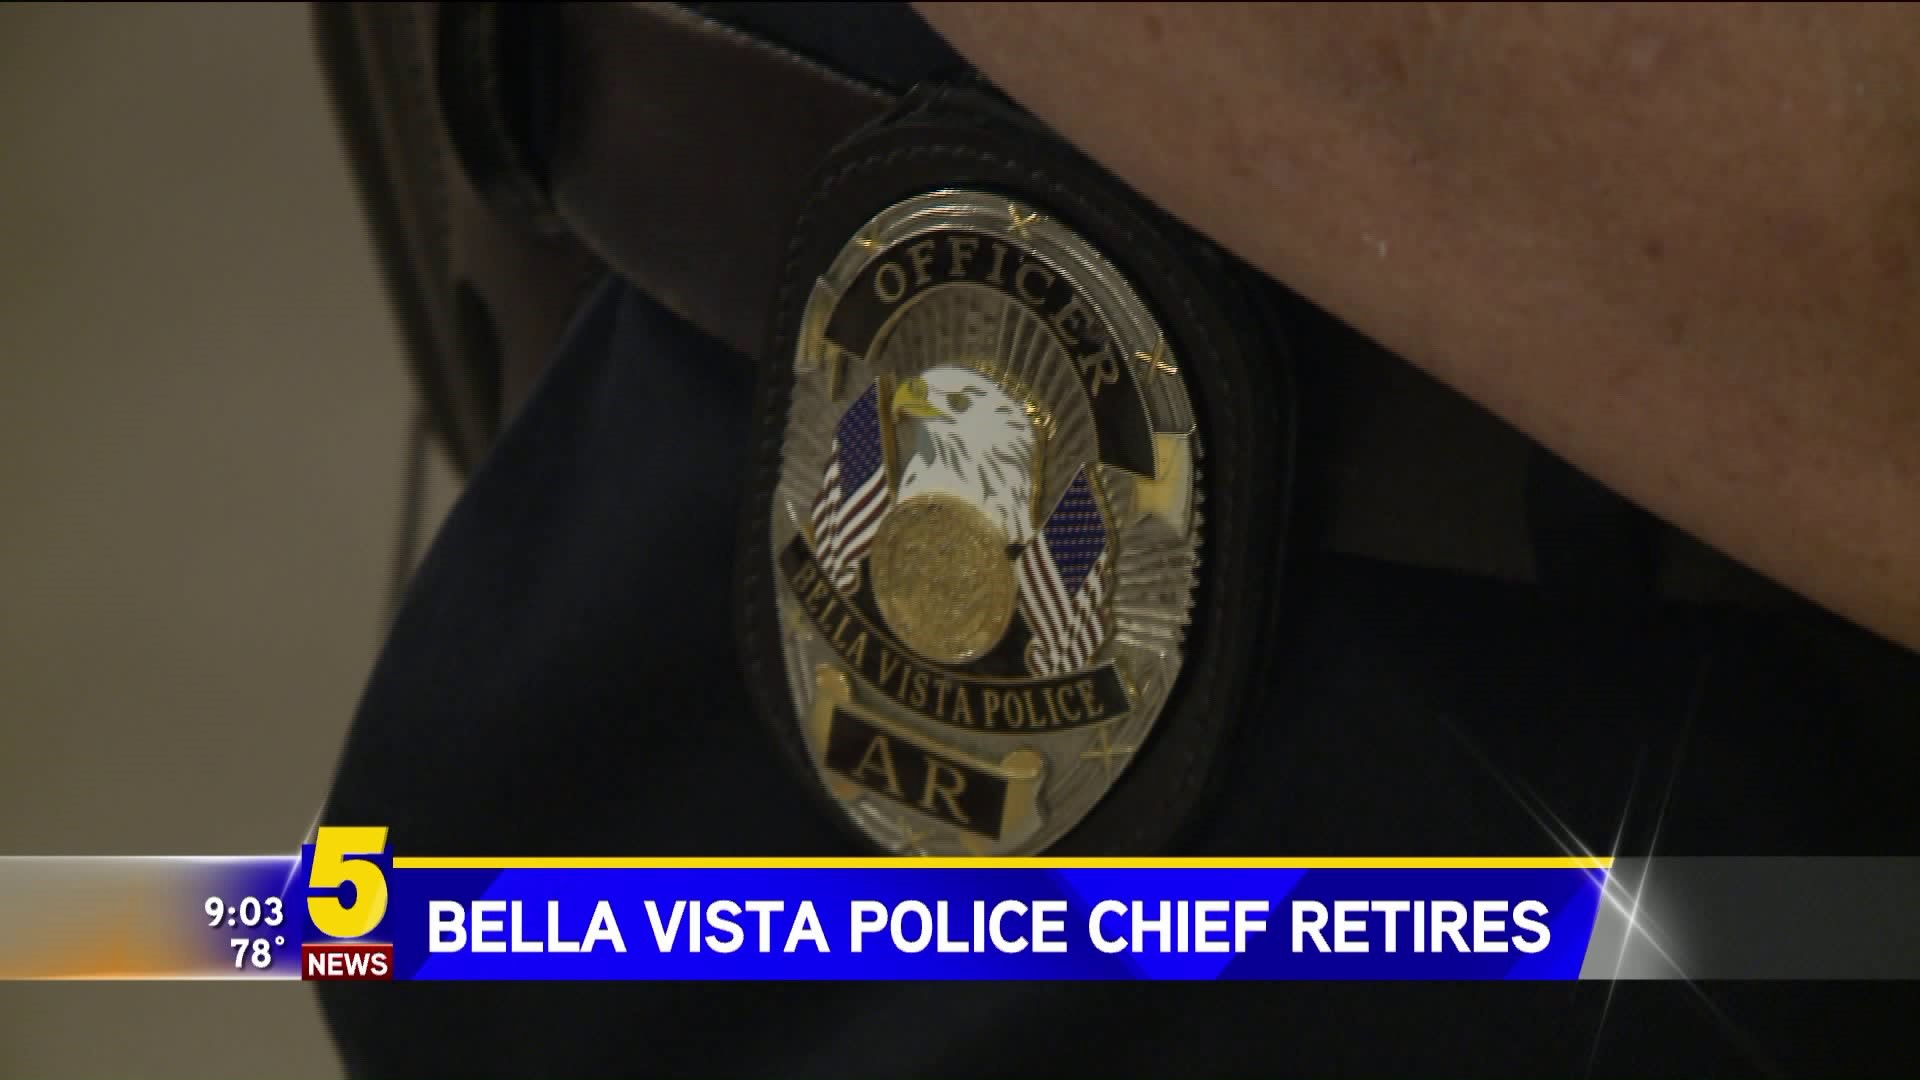 BELLA VISTA POLICE CHIEF RETIRES